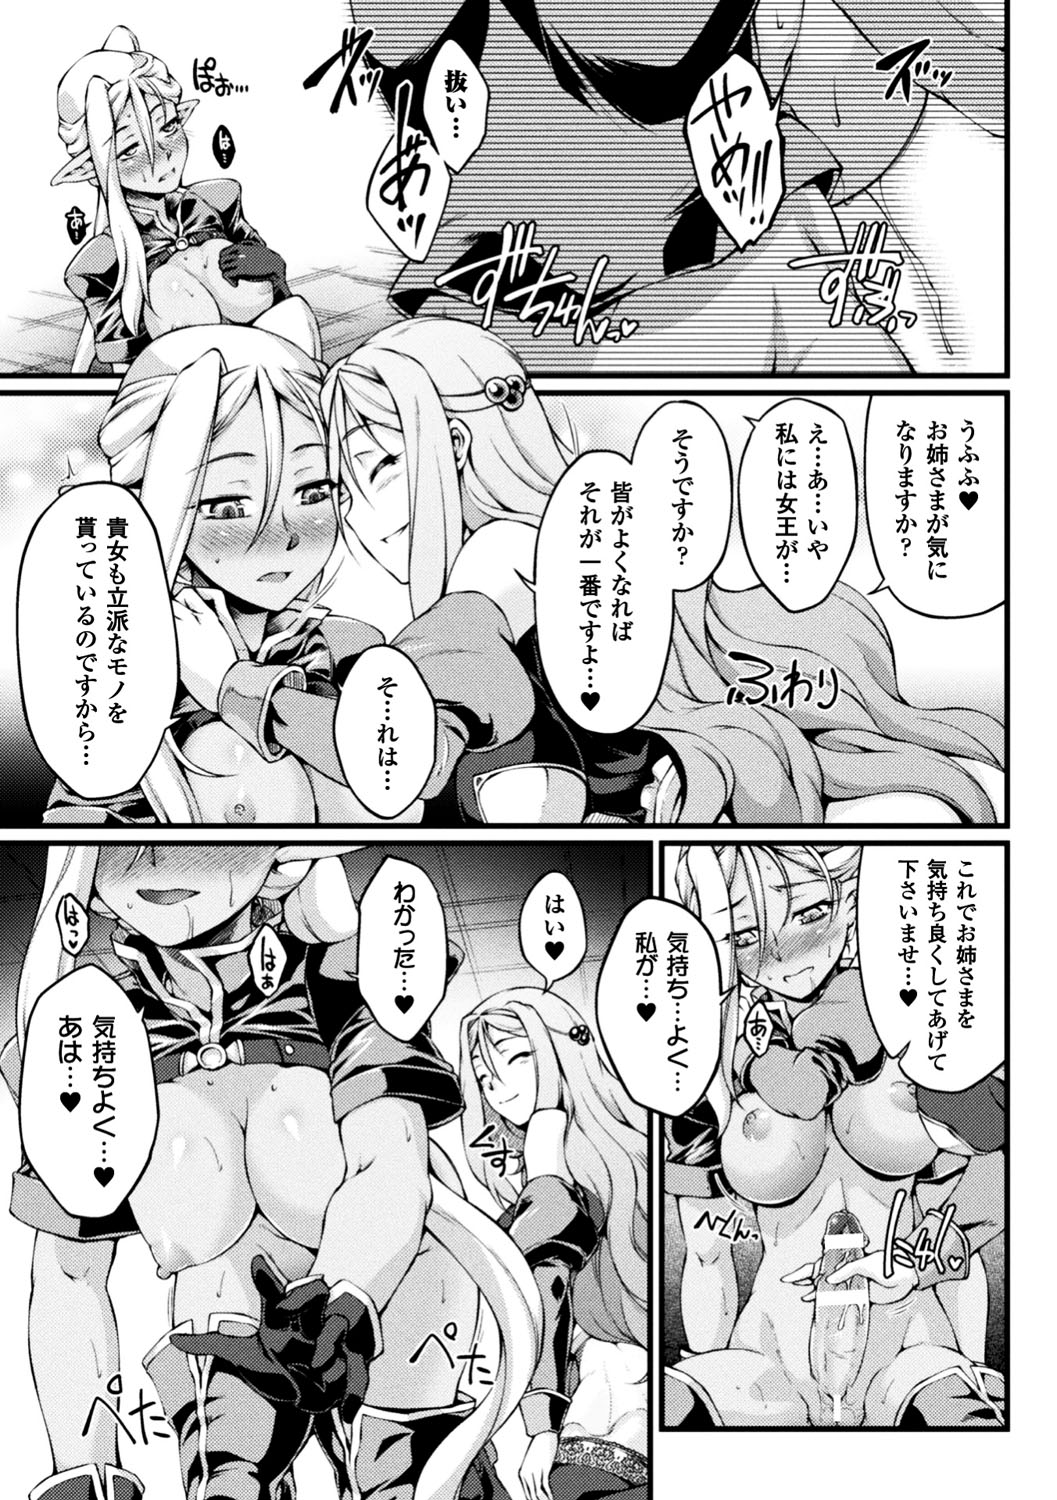 [Anthology] Seigi no Heroine Kangoku File Vol. 13 [Digital] page 43 full